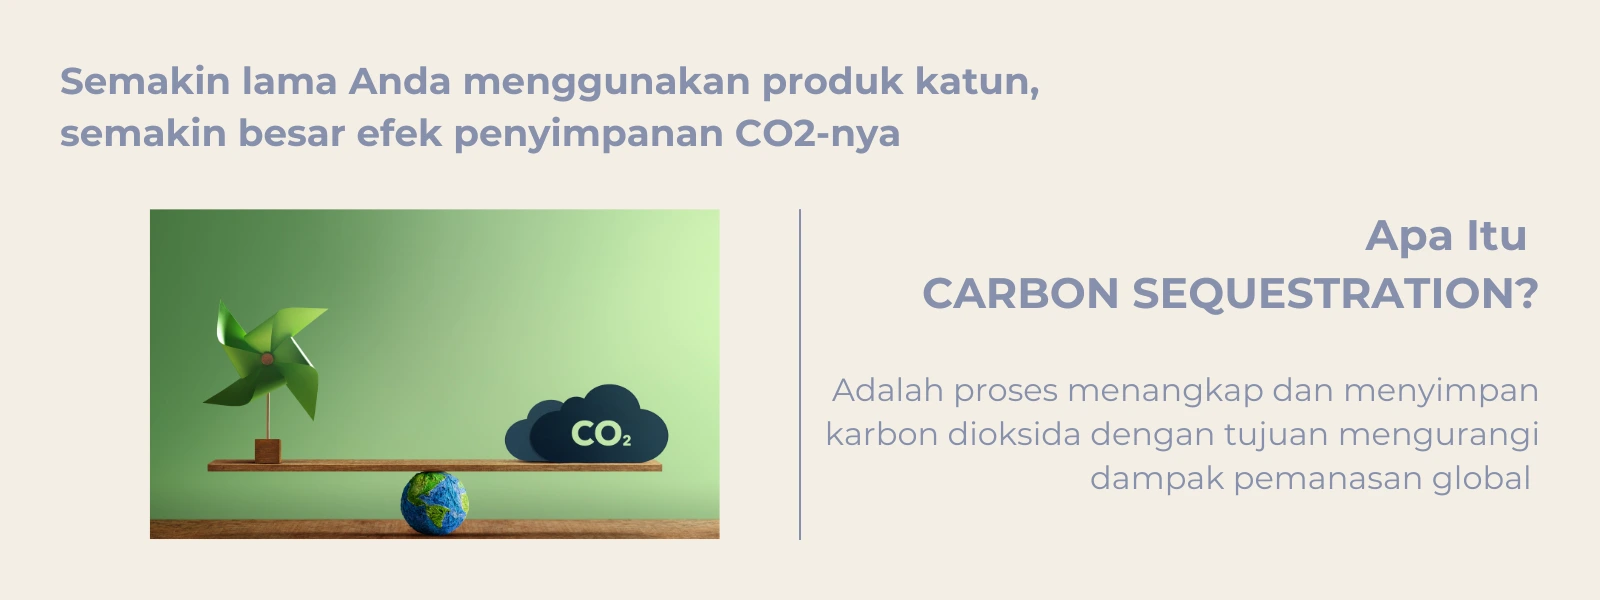 Katun Ramah Lingkungan: Carbon Sequestration